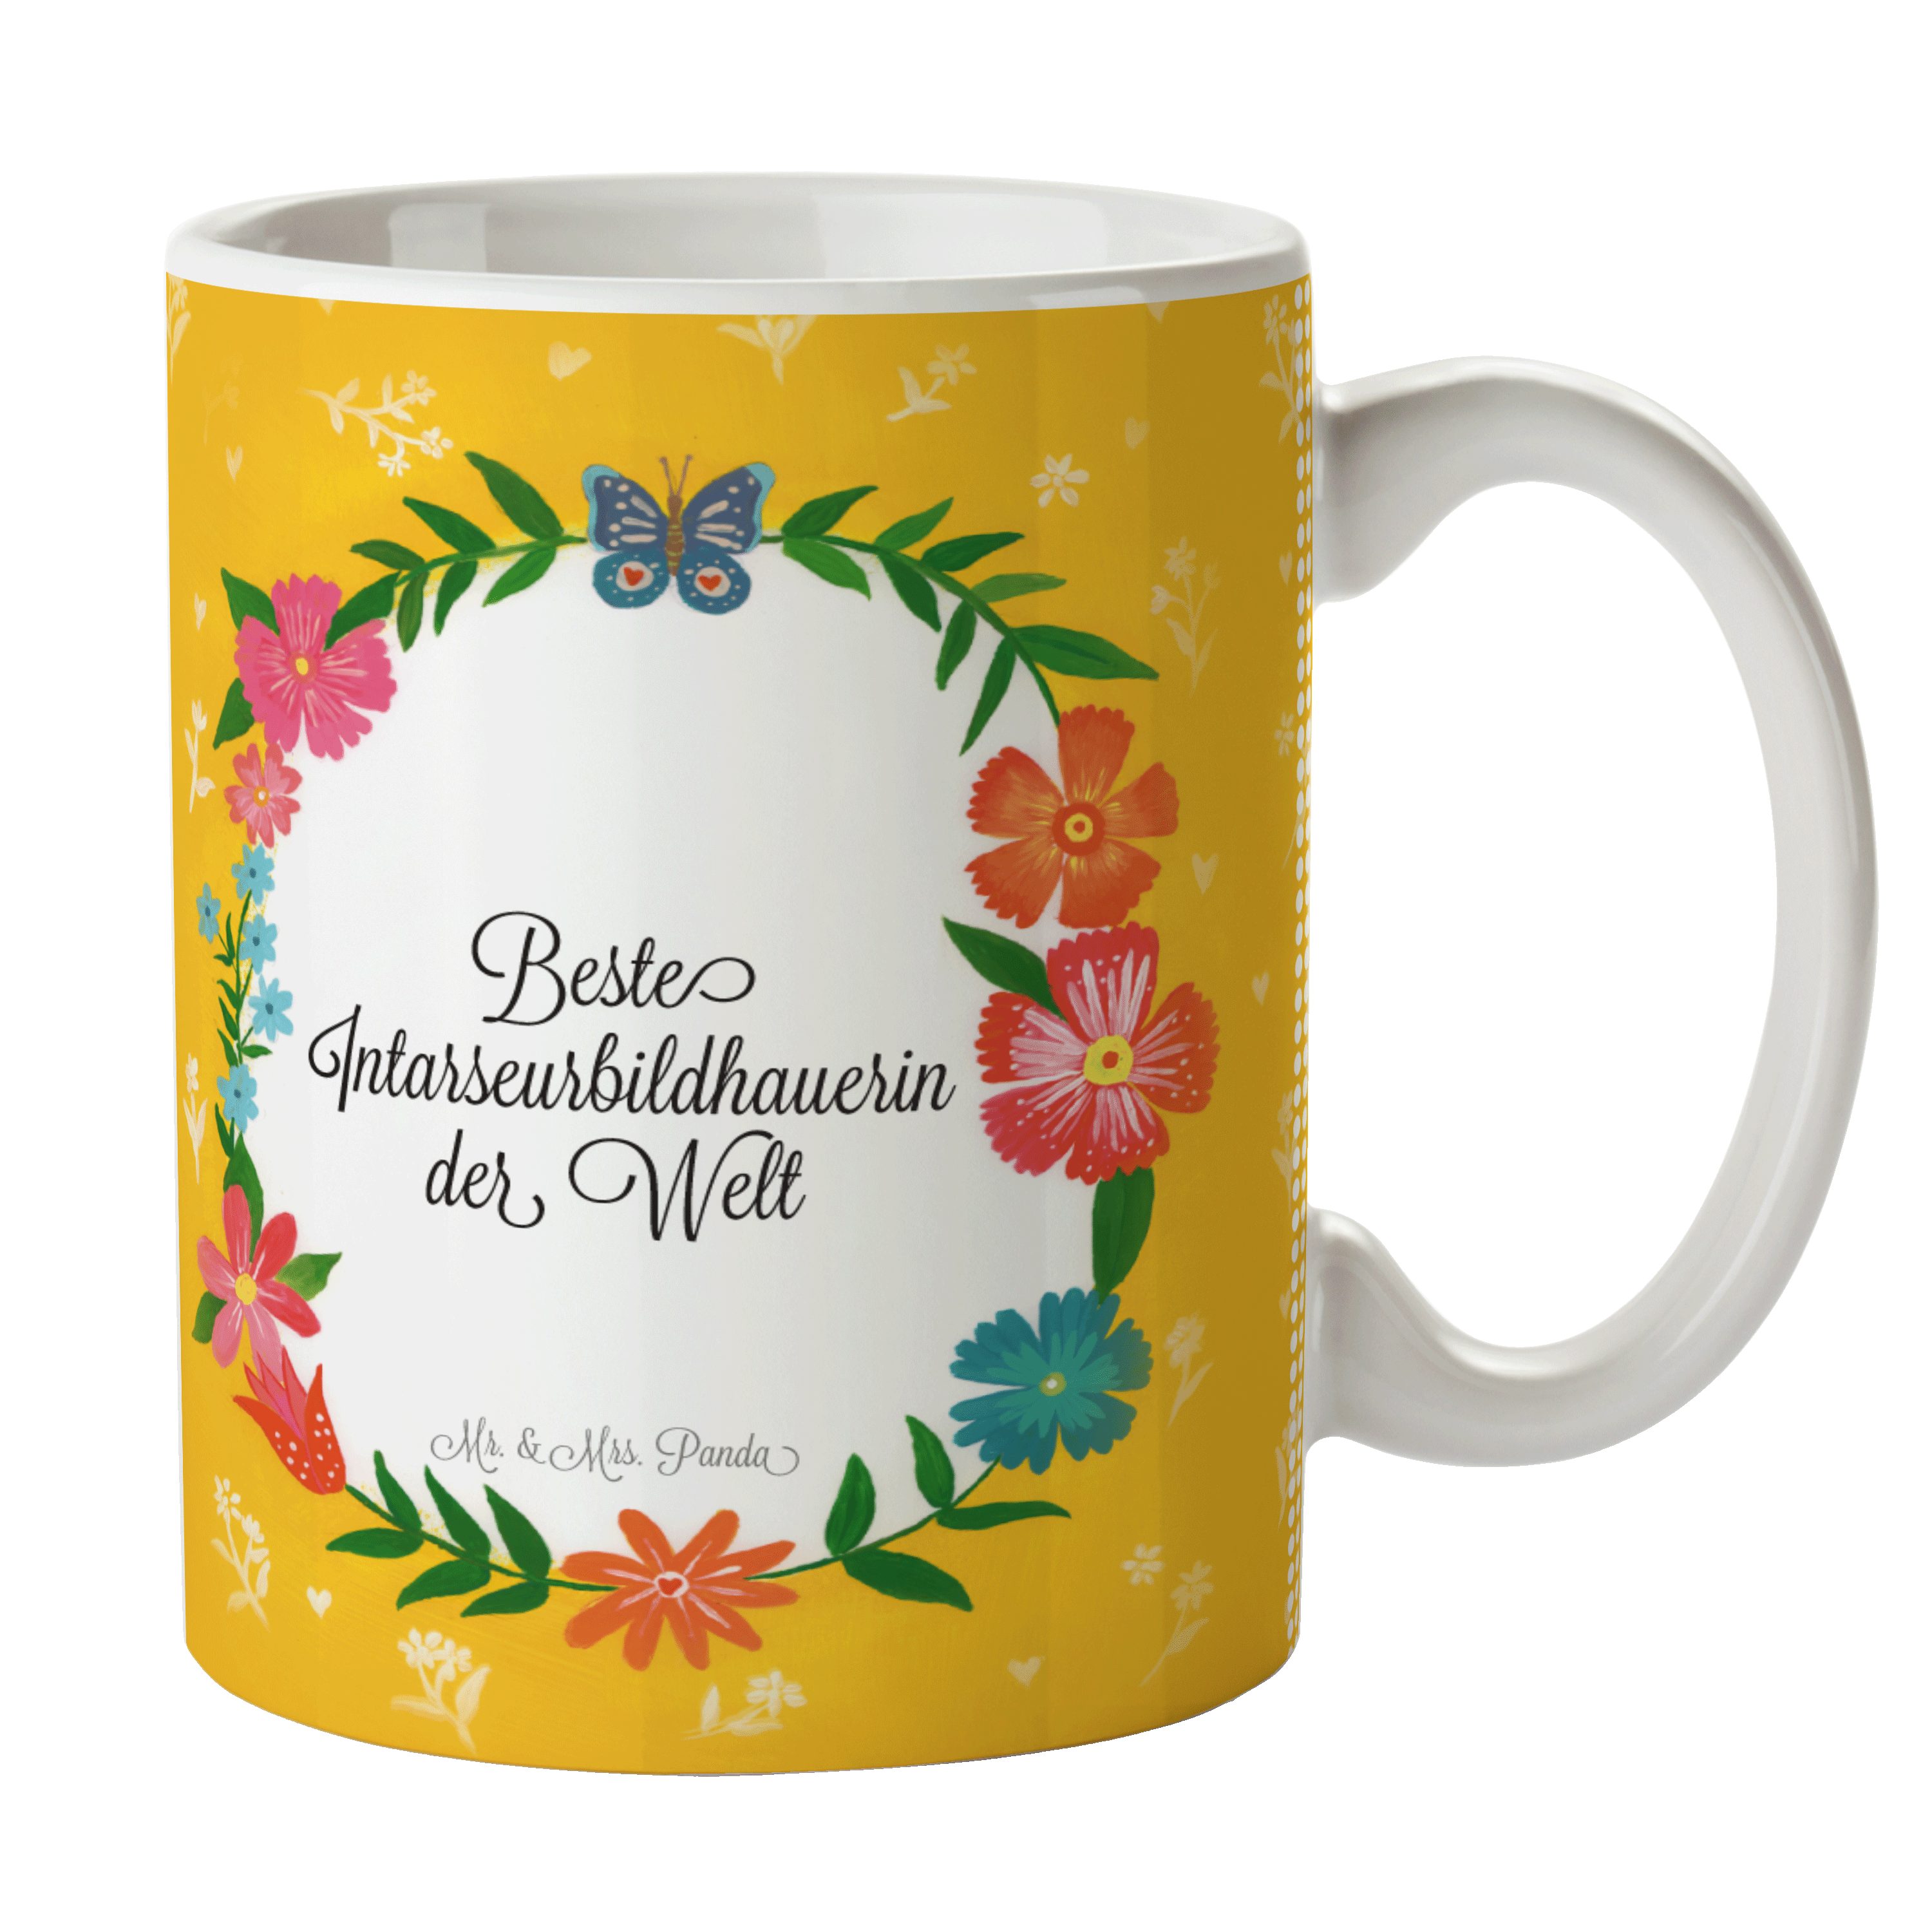 Keramik Becher, Tasse Mr. - Kaffeetasse, Intarseurbildhauerin & Geschenk, Abschied, Gesch, Mrs. Panda